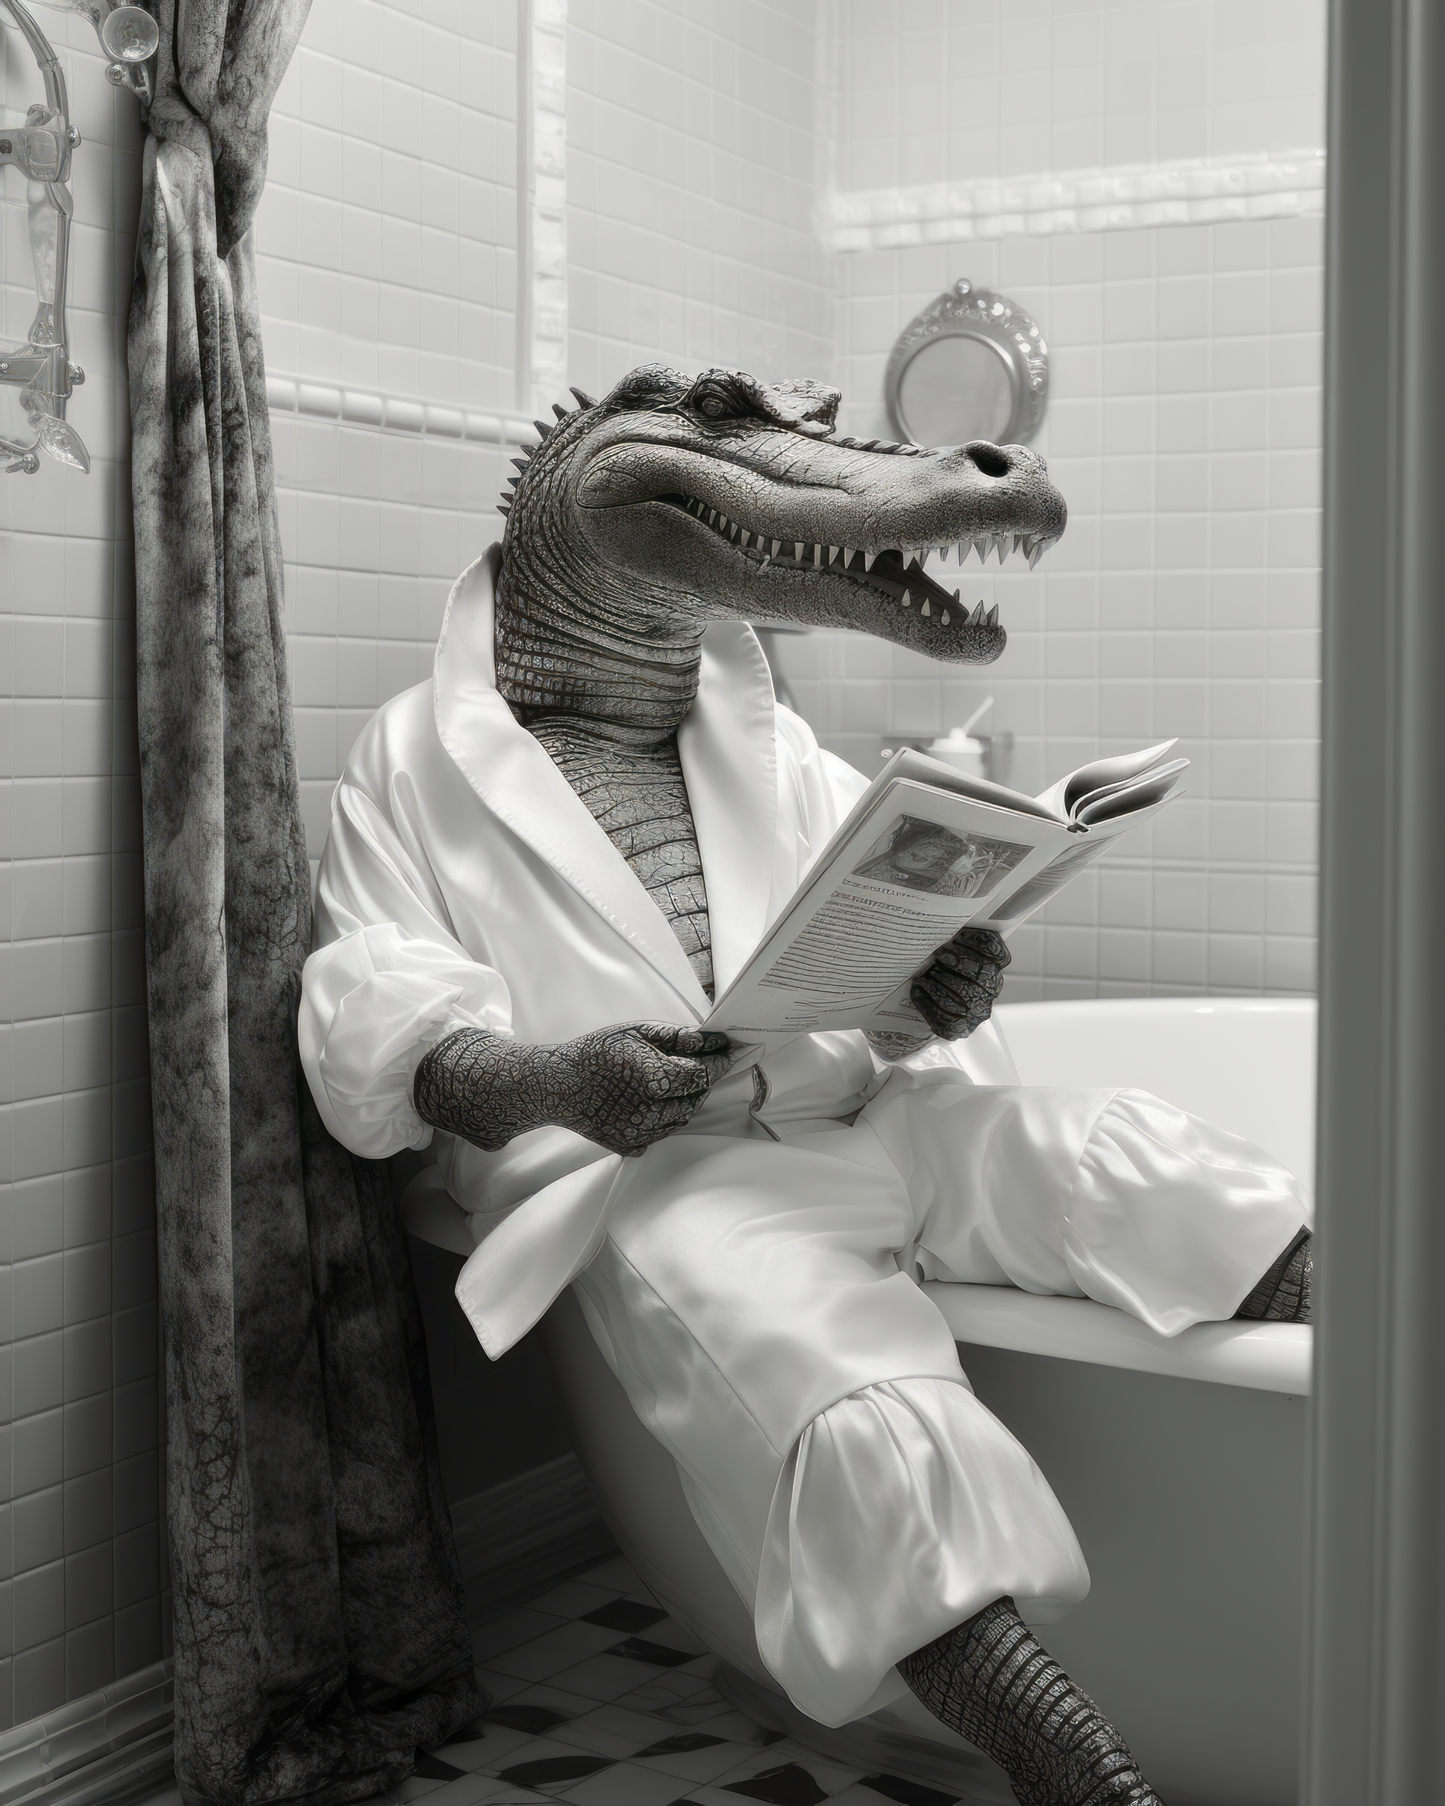 Bathroom Alligator